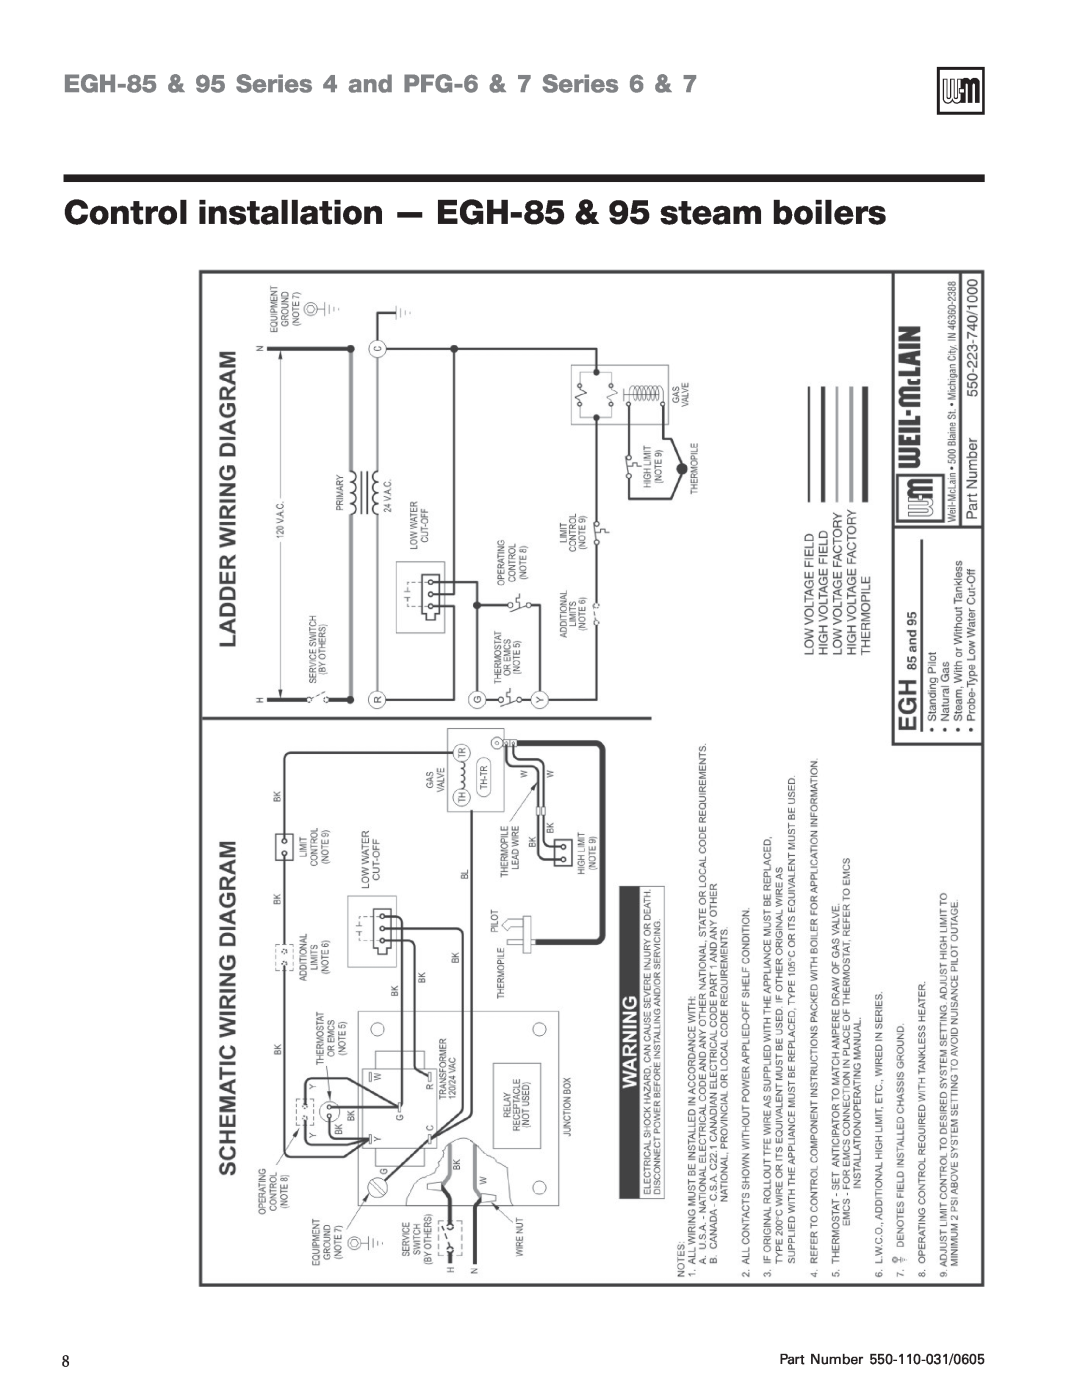 Weil-McLain EGH-95 manual Control installation - EGH-85& 95 steam boilers, EGH-85& 95 Series 4 and PFG-6& 7 Series 